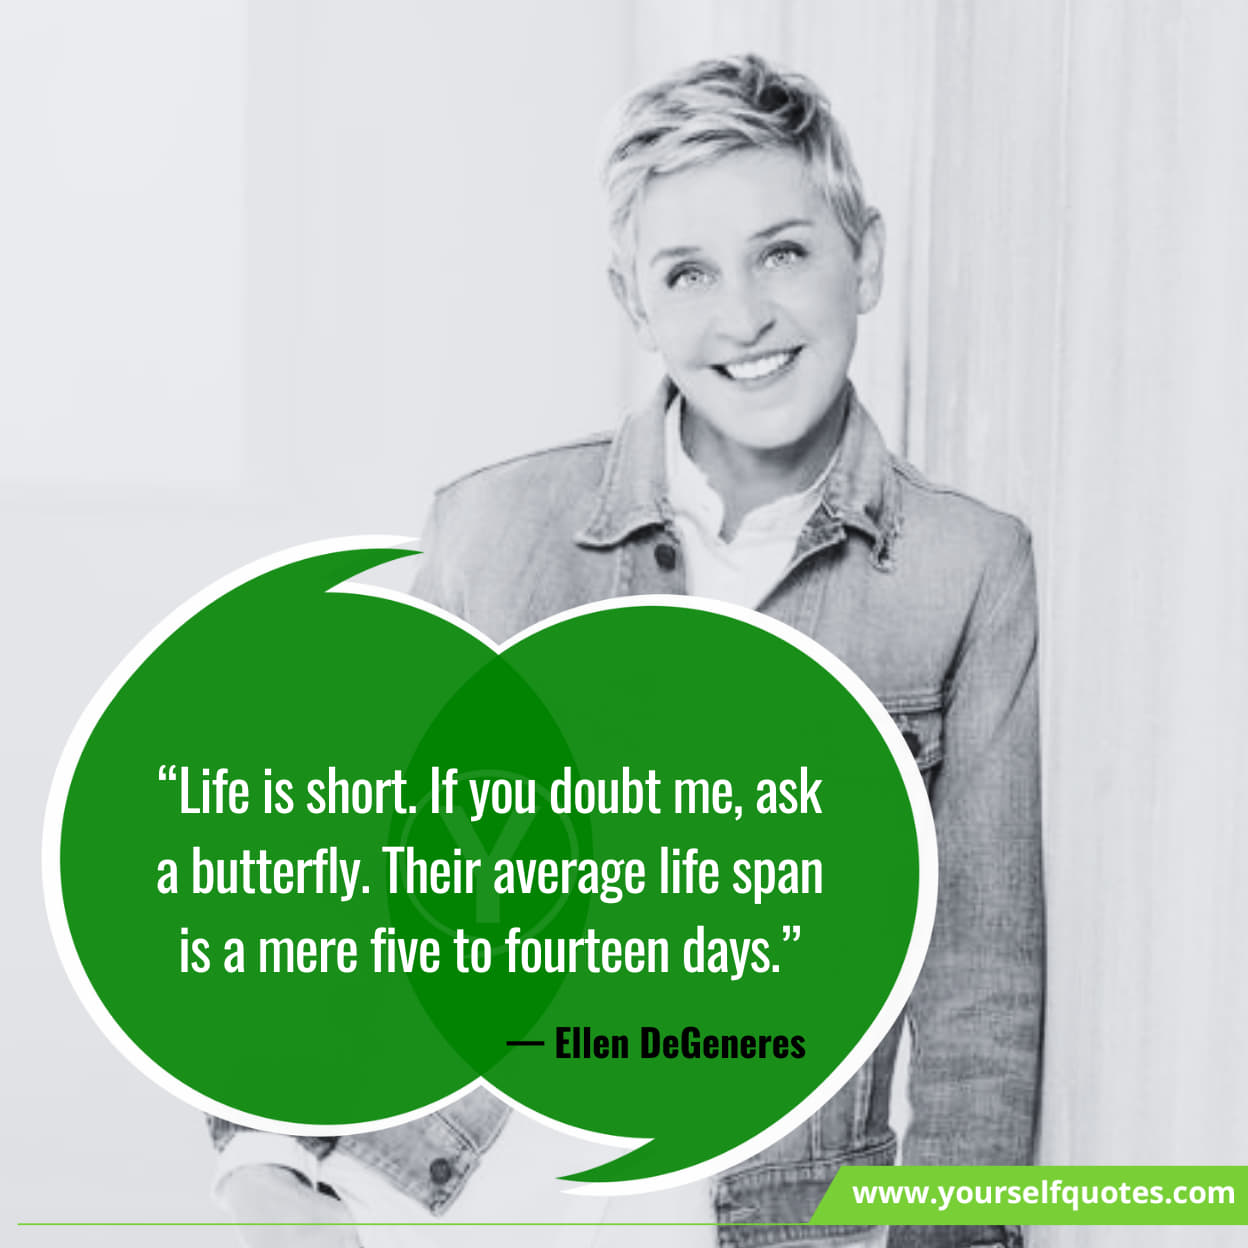 Latest Ellen DeGeneres Quotes On Life 